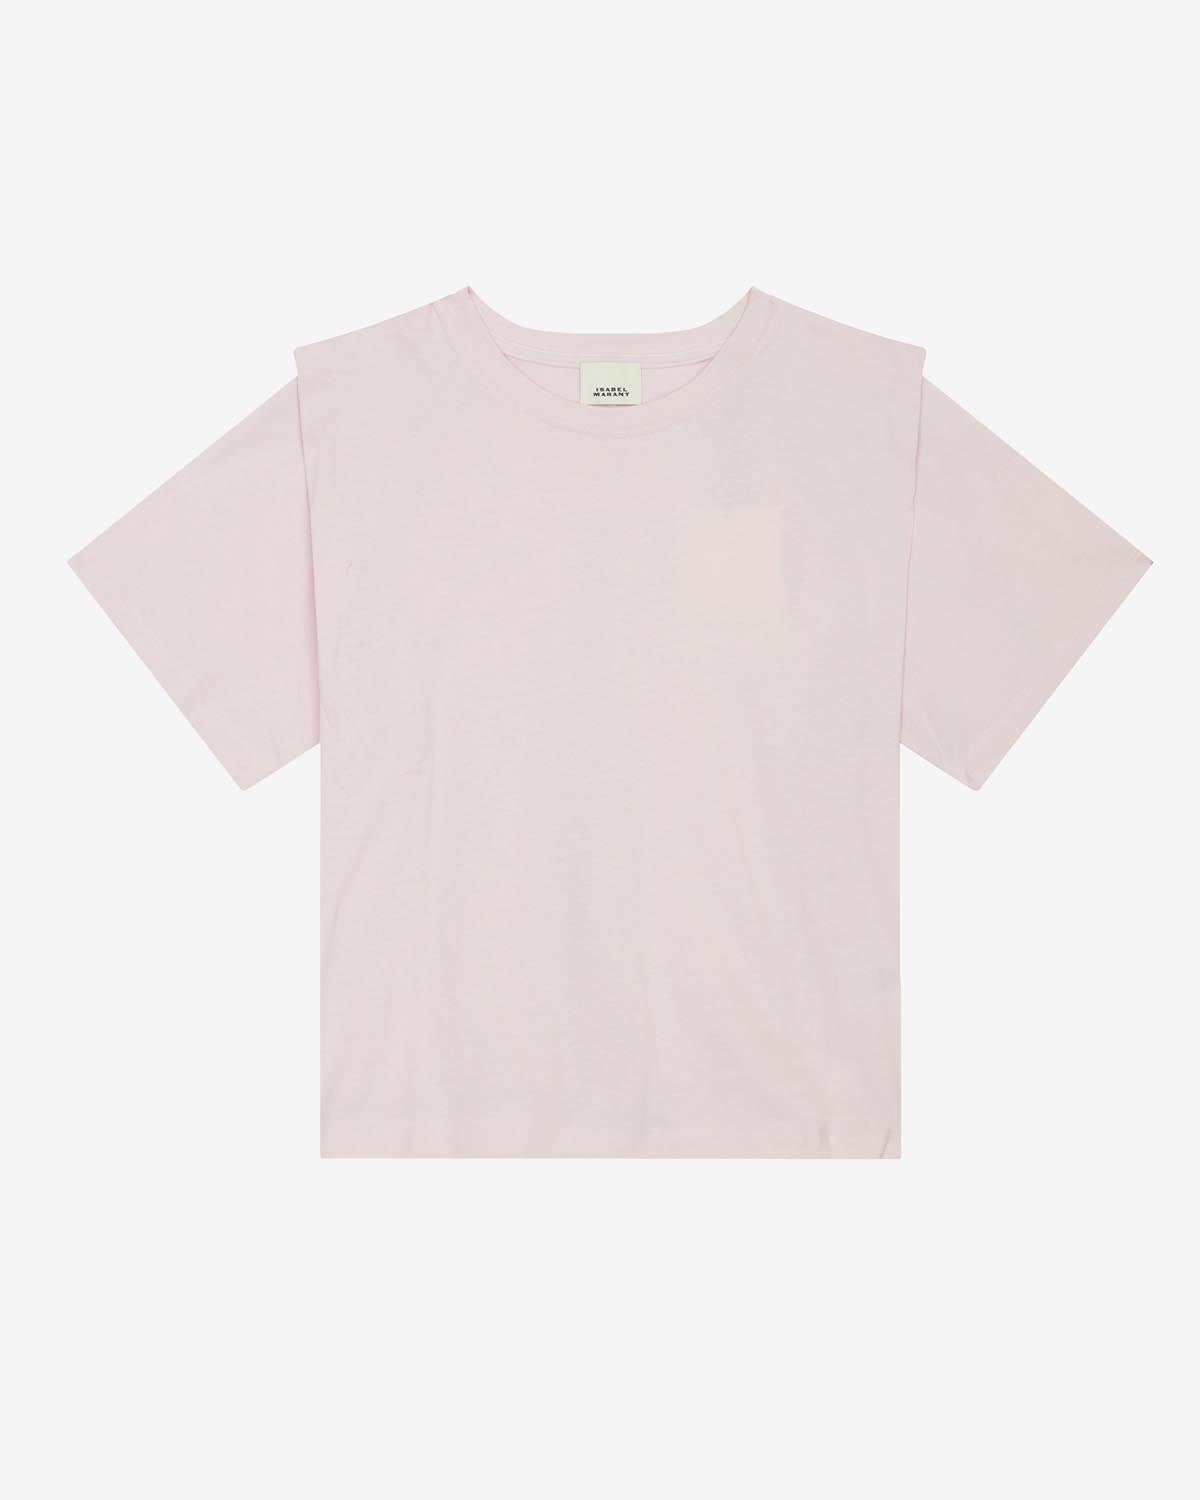 Zelitos tee shirt Woman Light pink 1